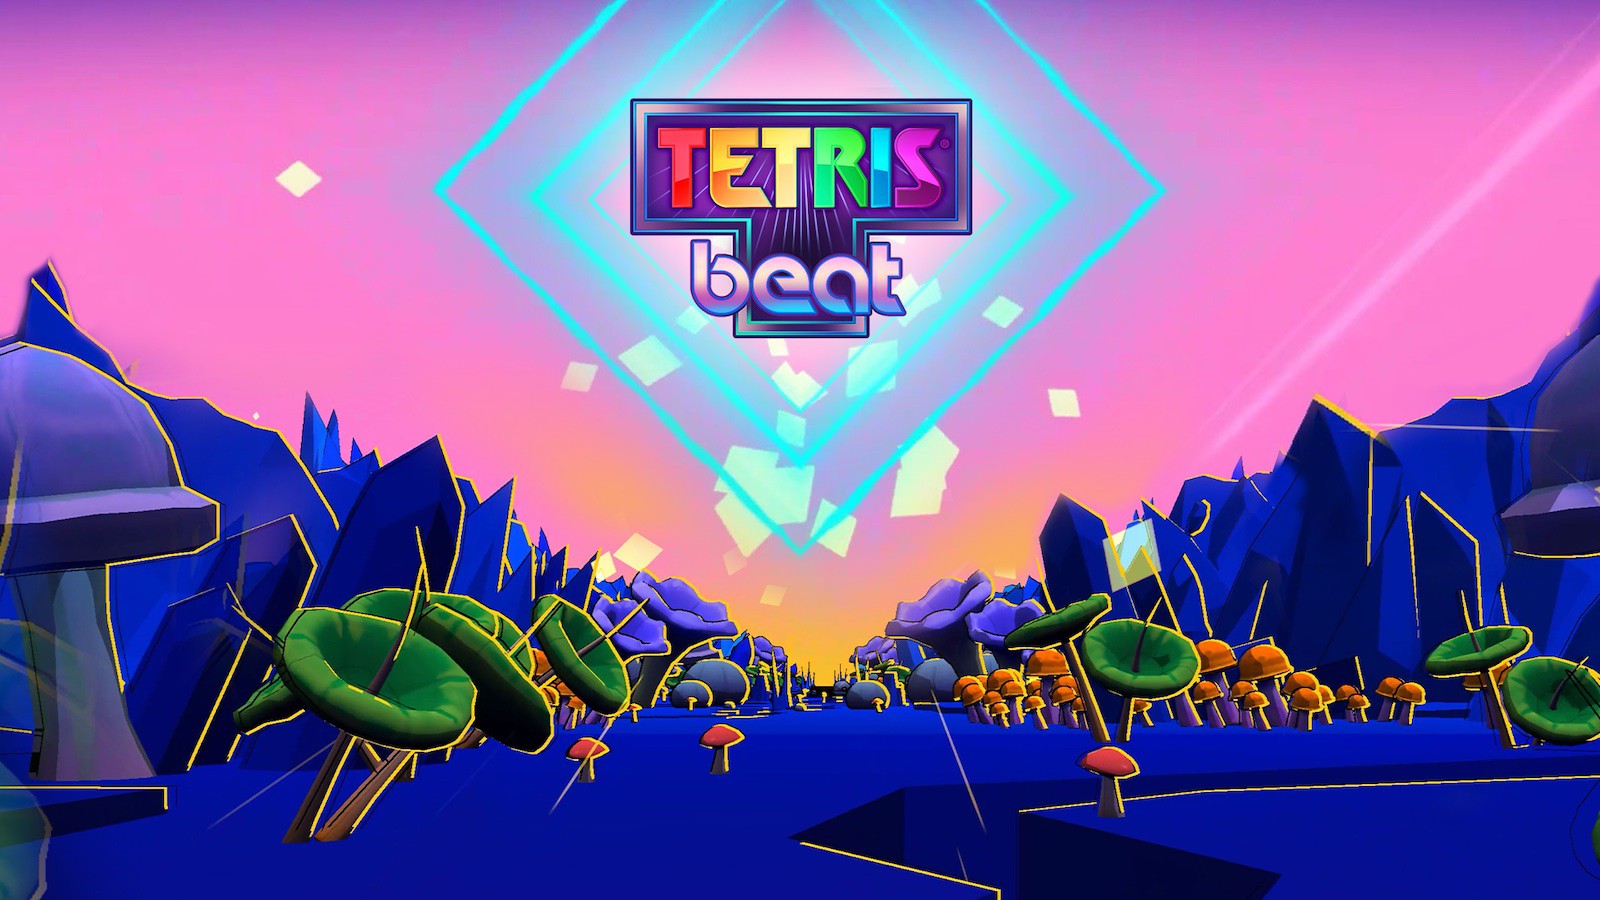 В Apple Arcade вышла музыкальная игра Tetris Beat. Ставим блоки под бит